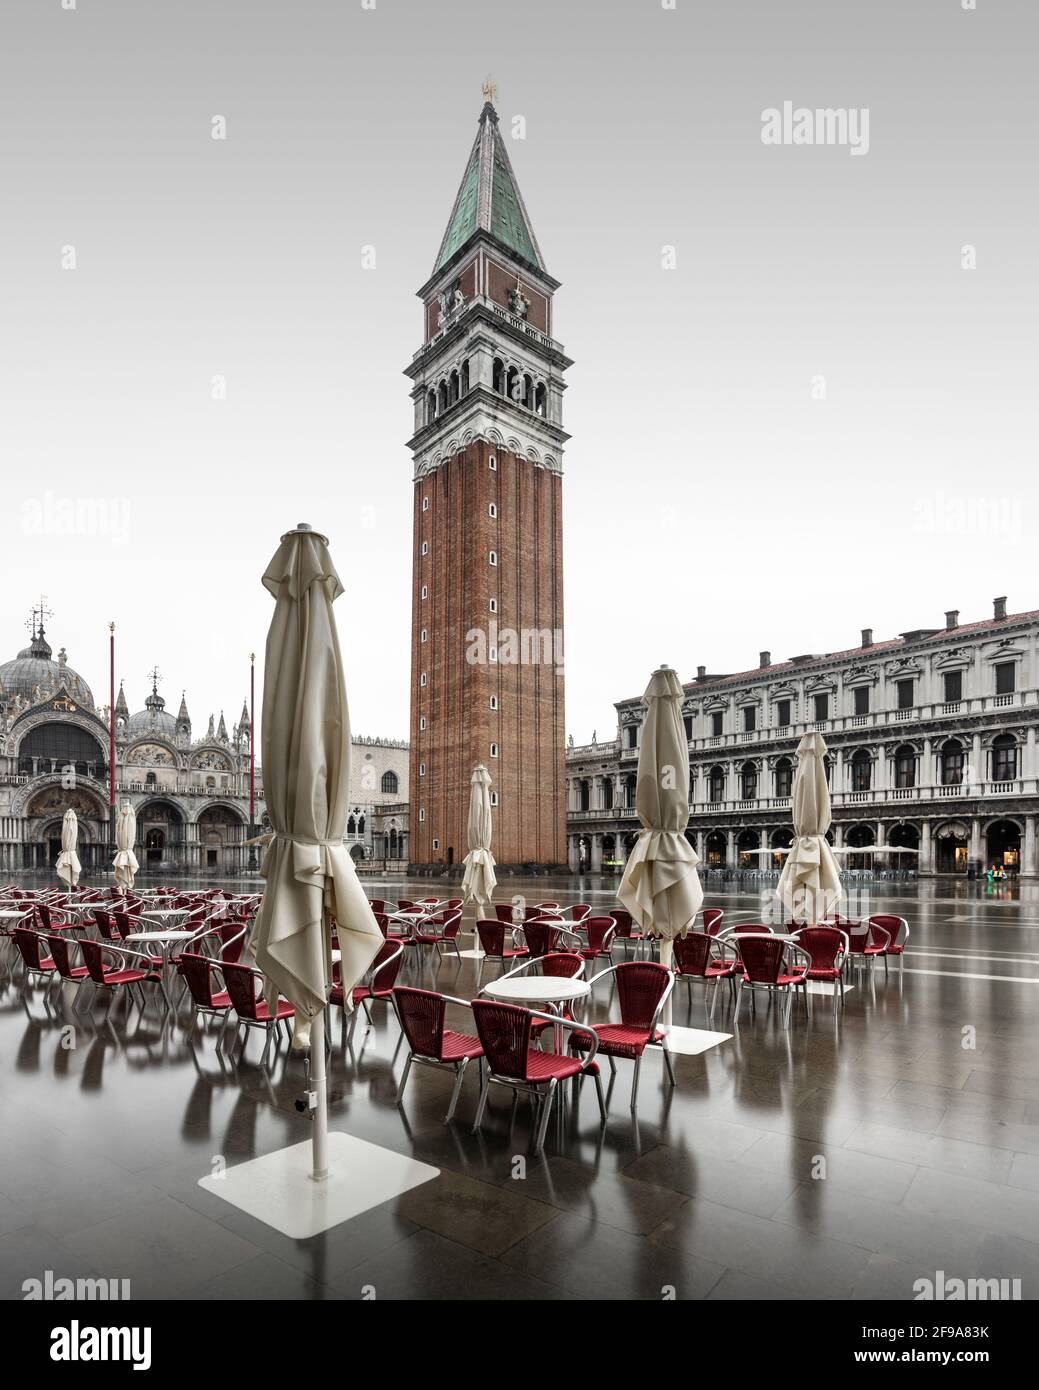 Al mattino, Piazza San Marco a Venezia è spesso vuota. Ci sono meno visitatori in città, soprattutto nei mesi invernali più freddi. Una o due volte al mese la famosa alluvione inonda Piazza San Marco e assicura splendidi riflessi. Foto Stock